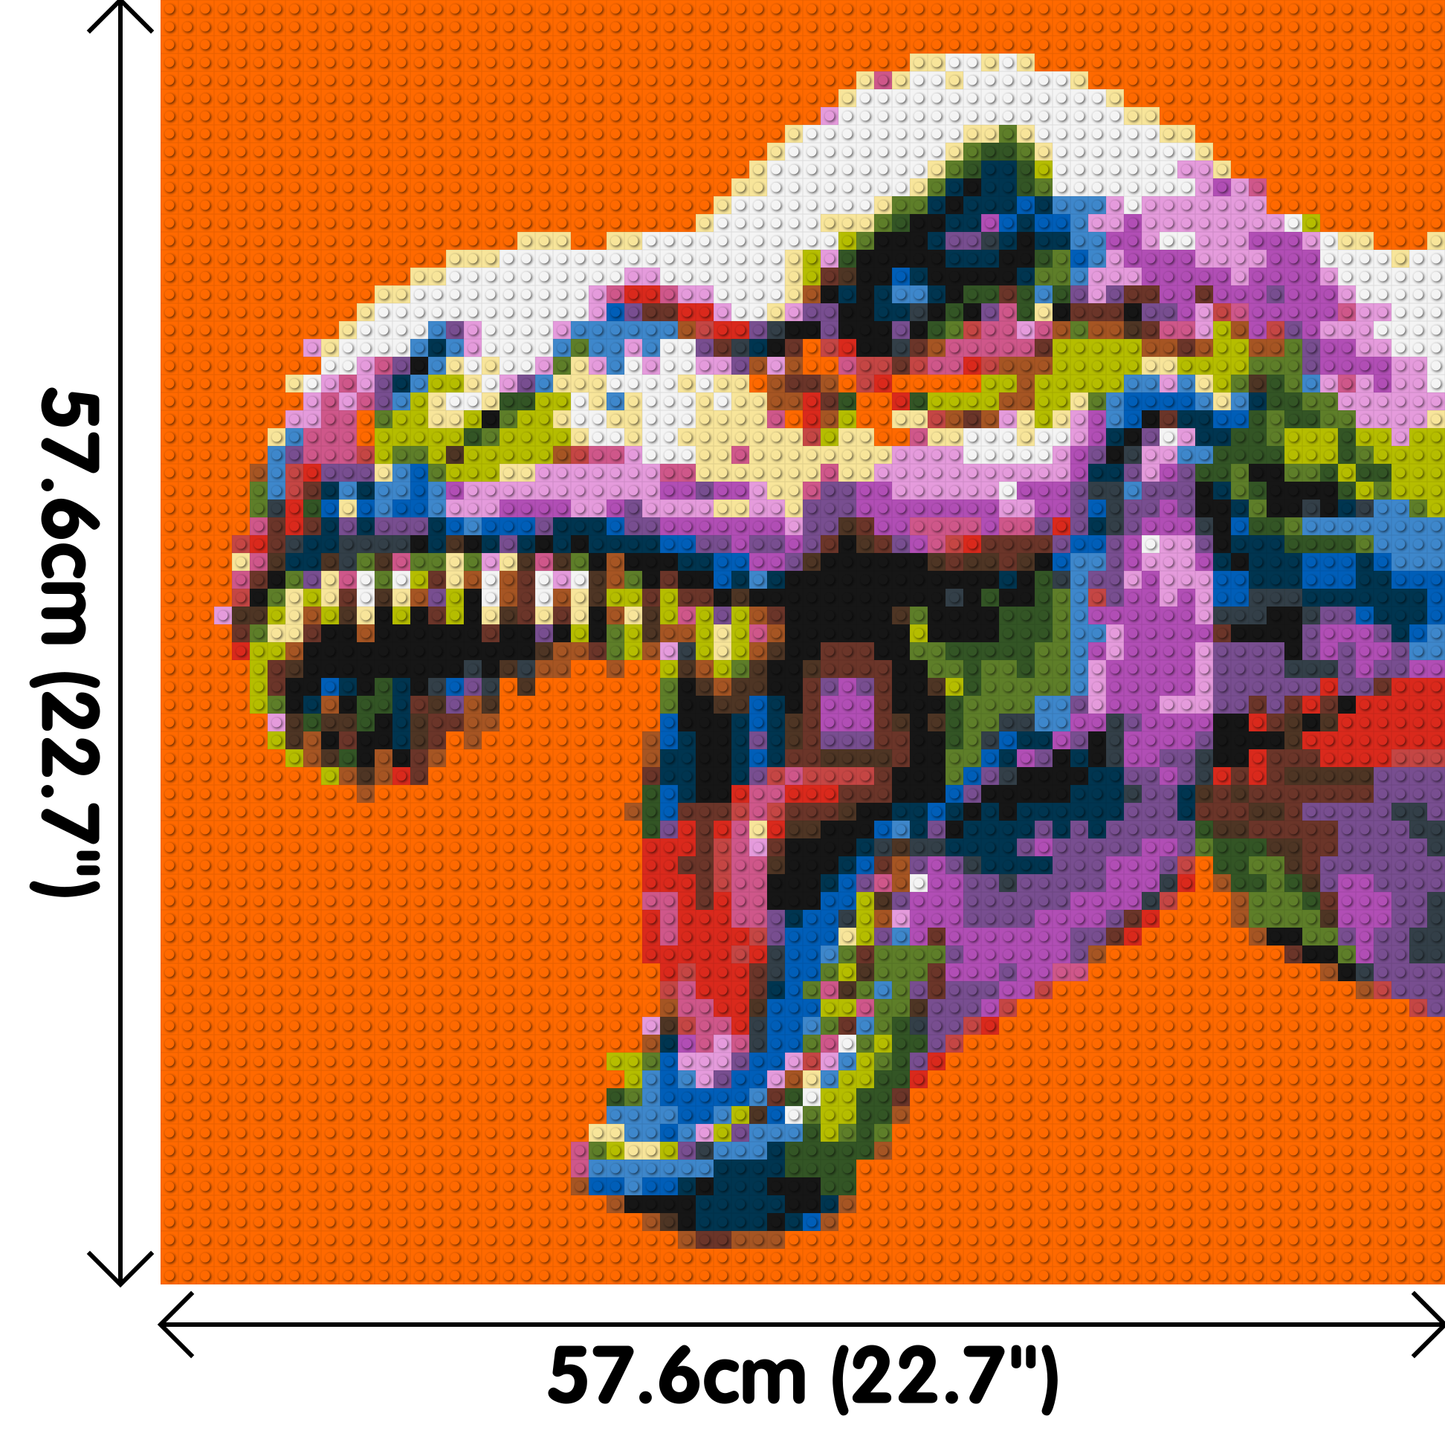 Dinosaur Colourful Pop Art  - Brick Art Mosaic Kit